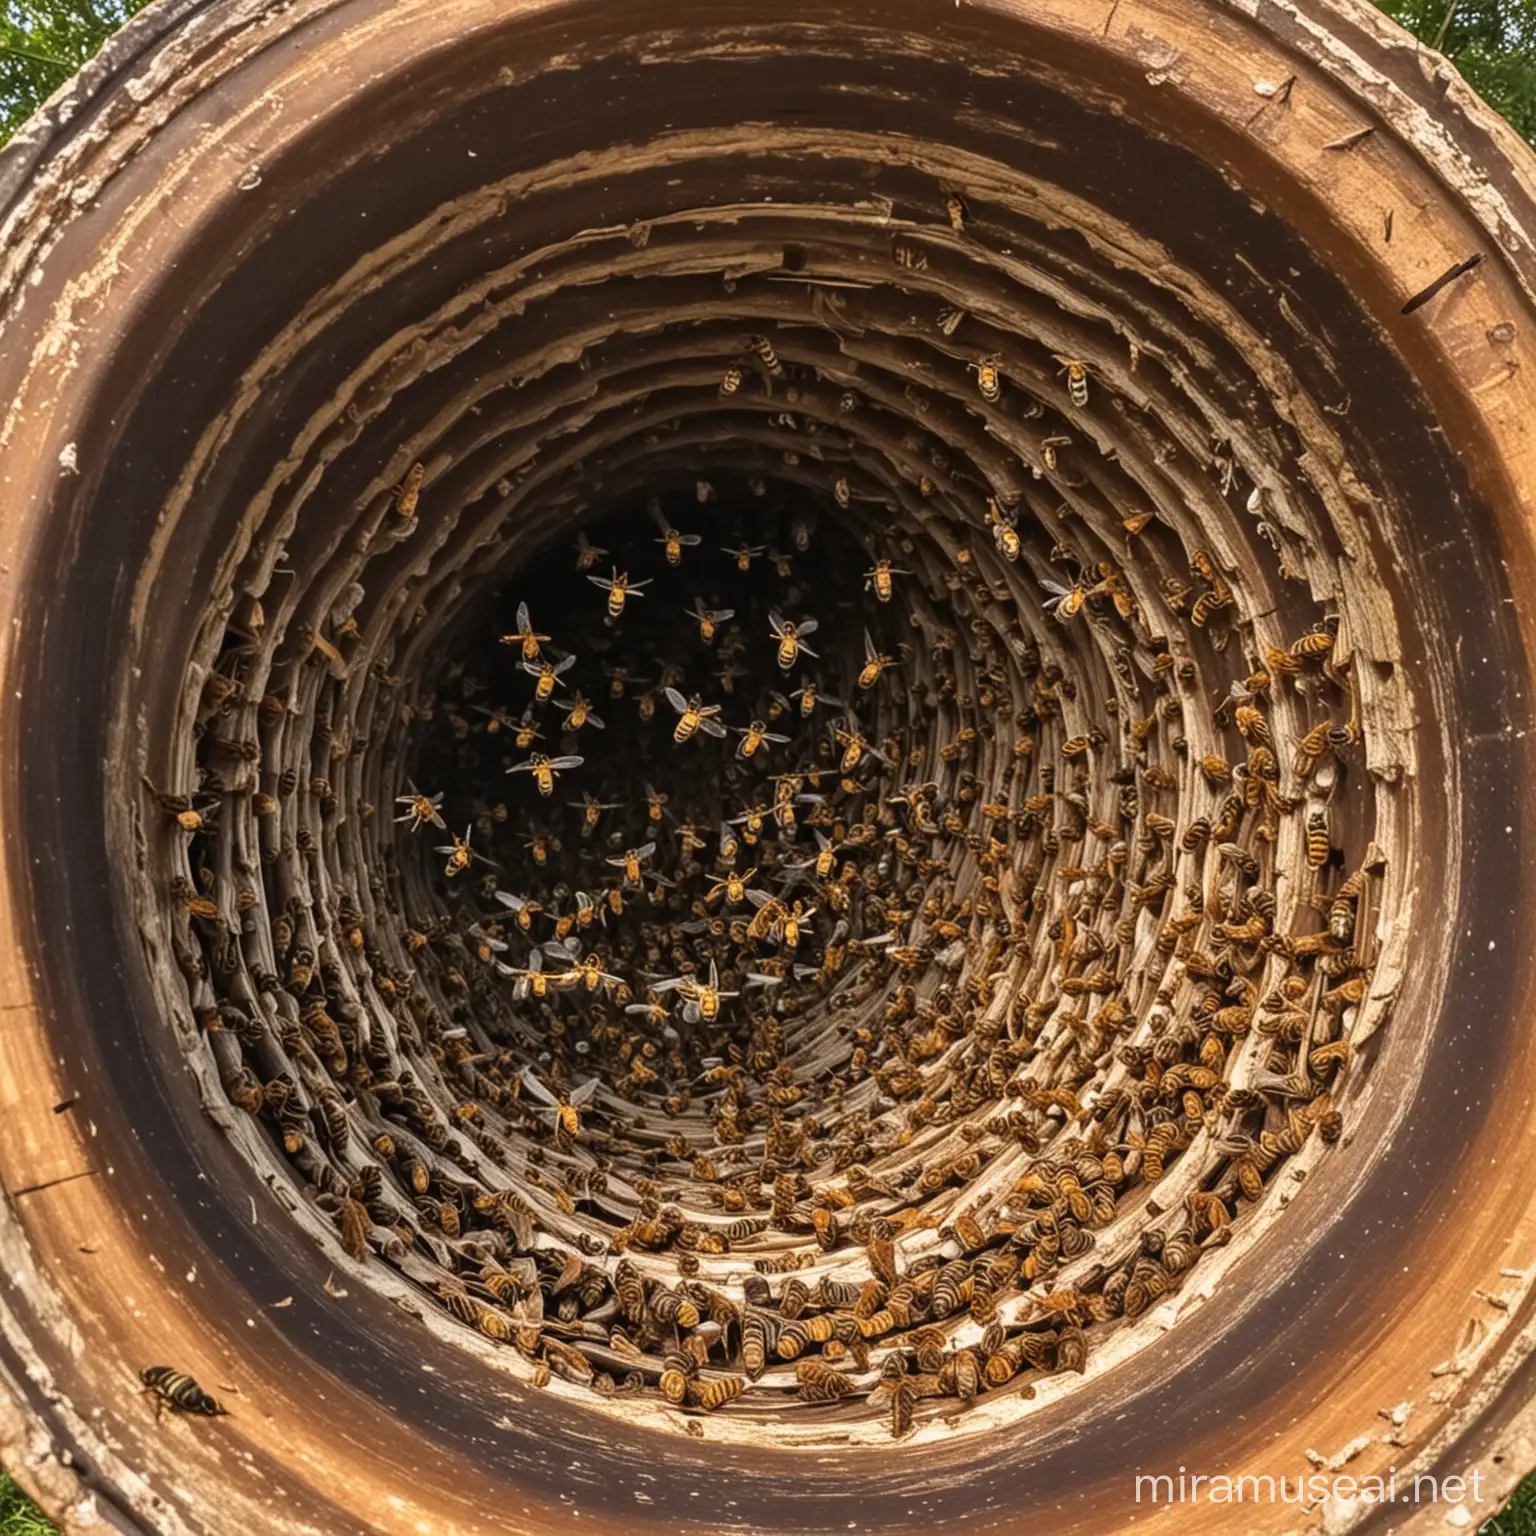 Hornets Nest Exploding with Scattering Hornets